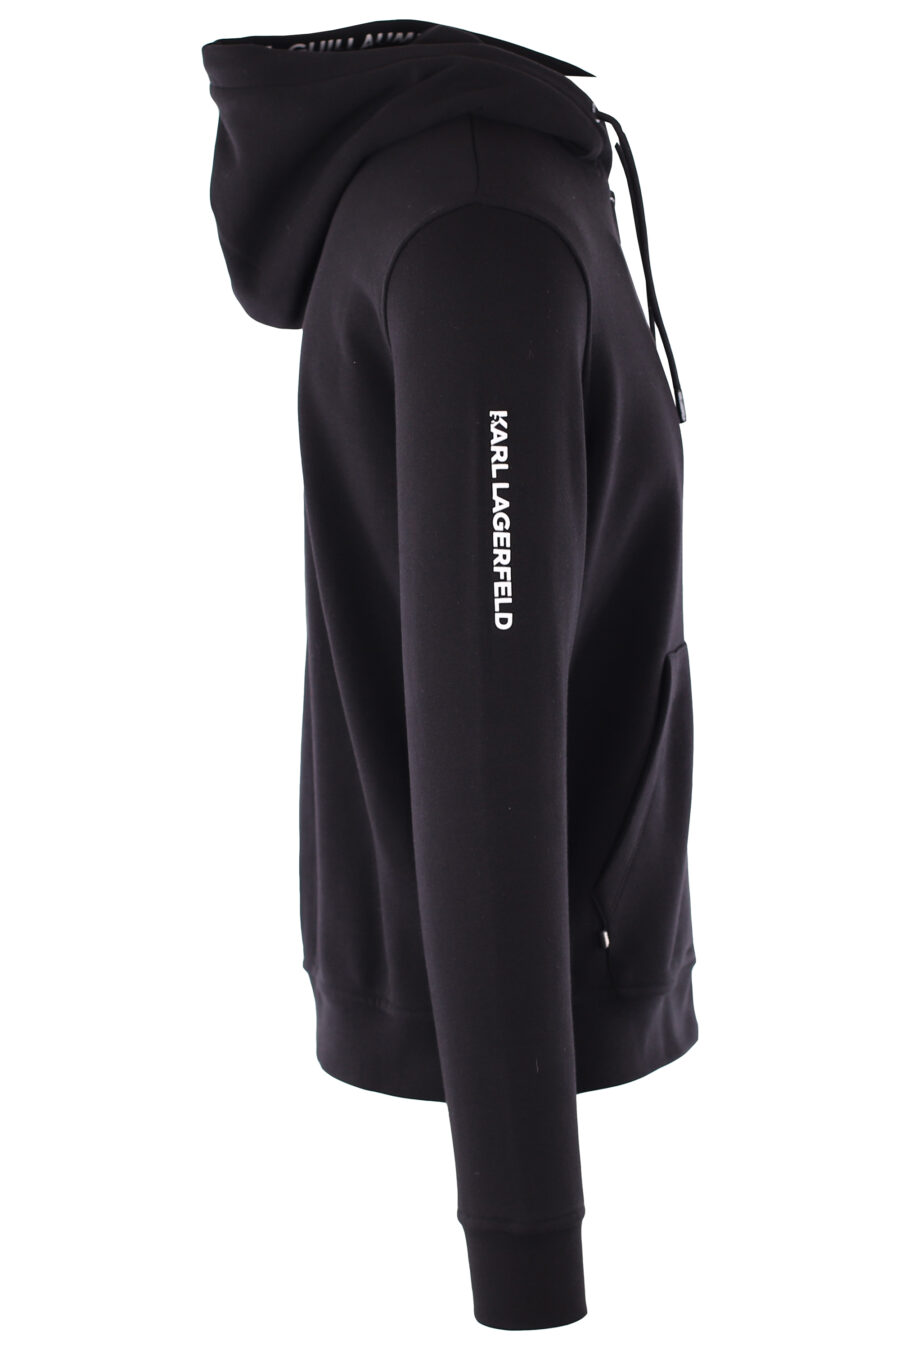 Sudadera negra con logo en capucha y logo de goma - IMG 6441